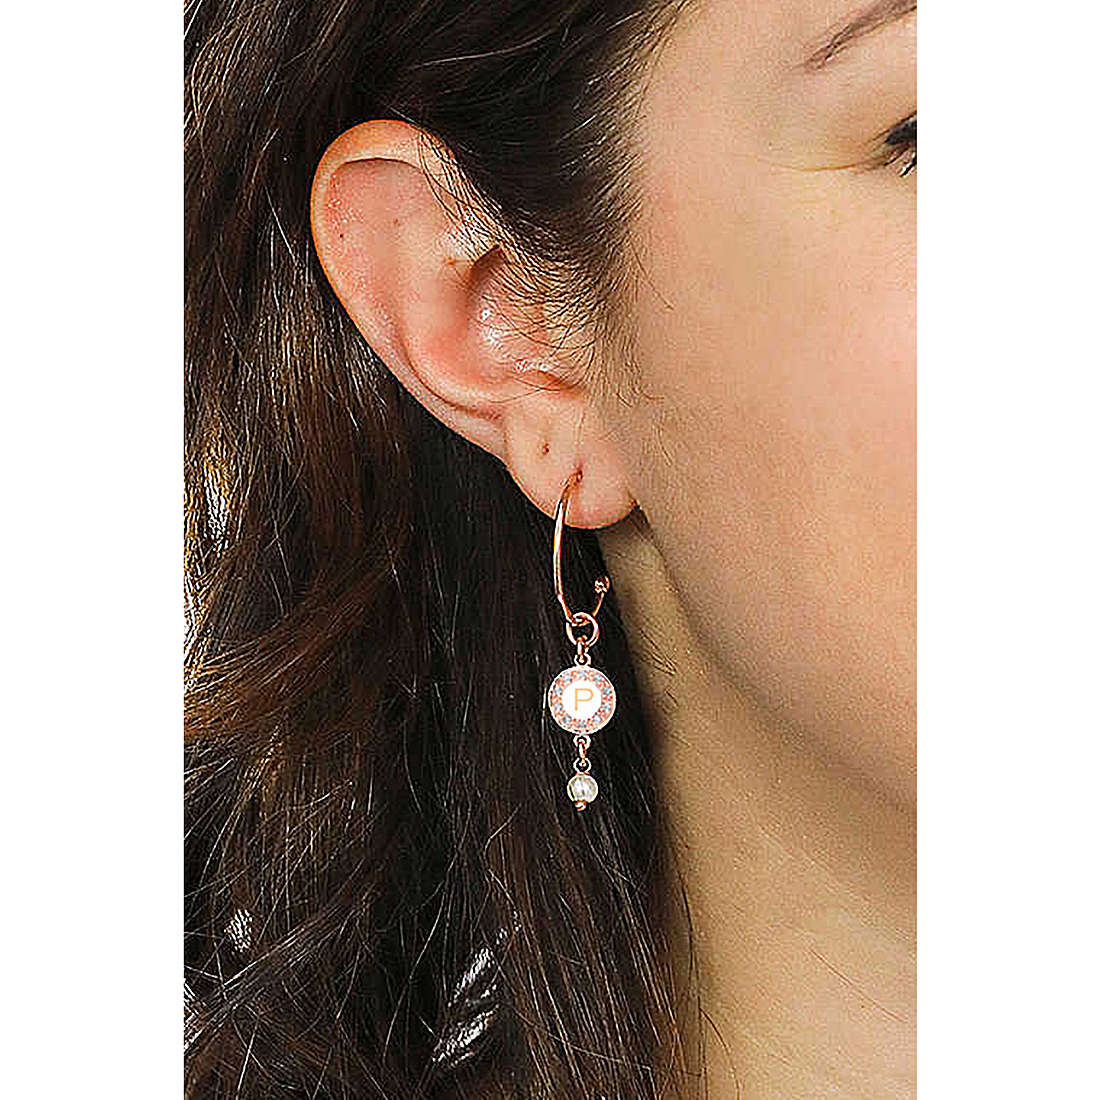 Dvccio earrings Kelly woman OTRESAGR-p wearing